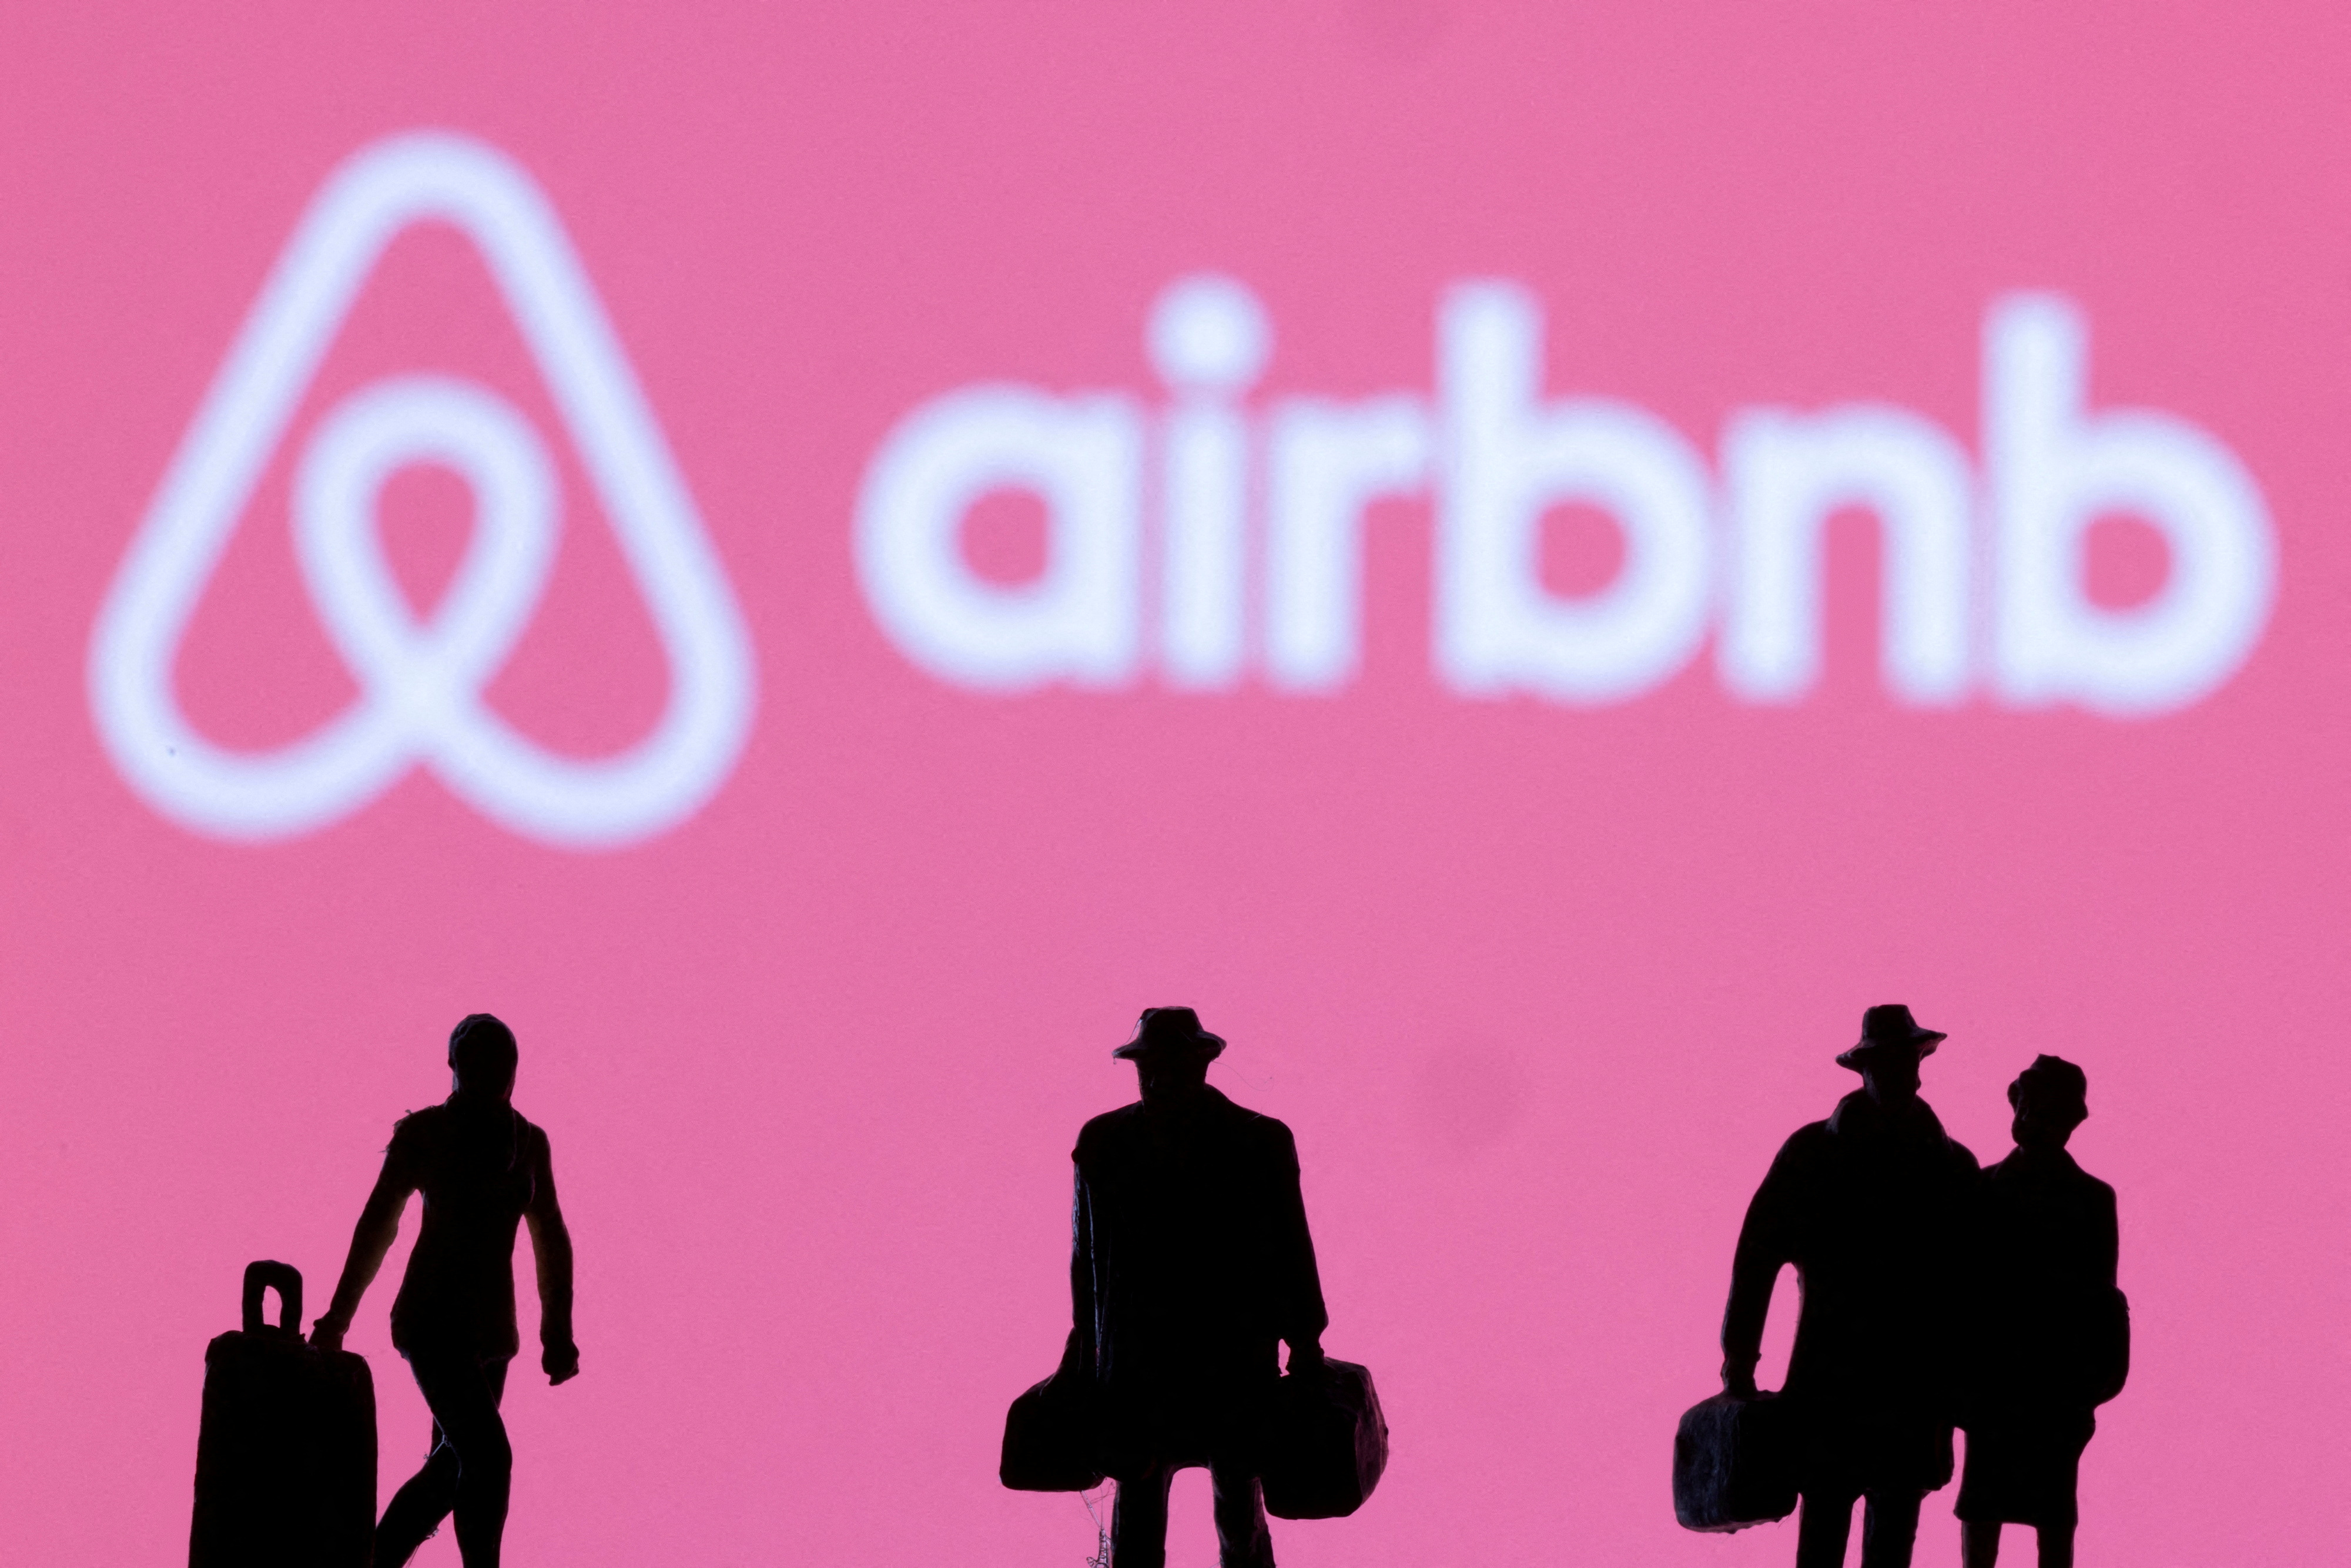 Airbnb realiza chequeos del historial de los usuarios para determinar si se les permitirá el uso de la aplicación. (REUTERS/Dado Ruvic)